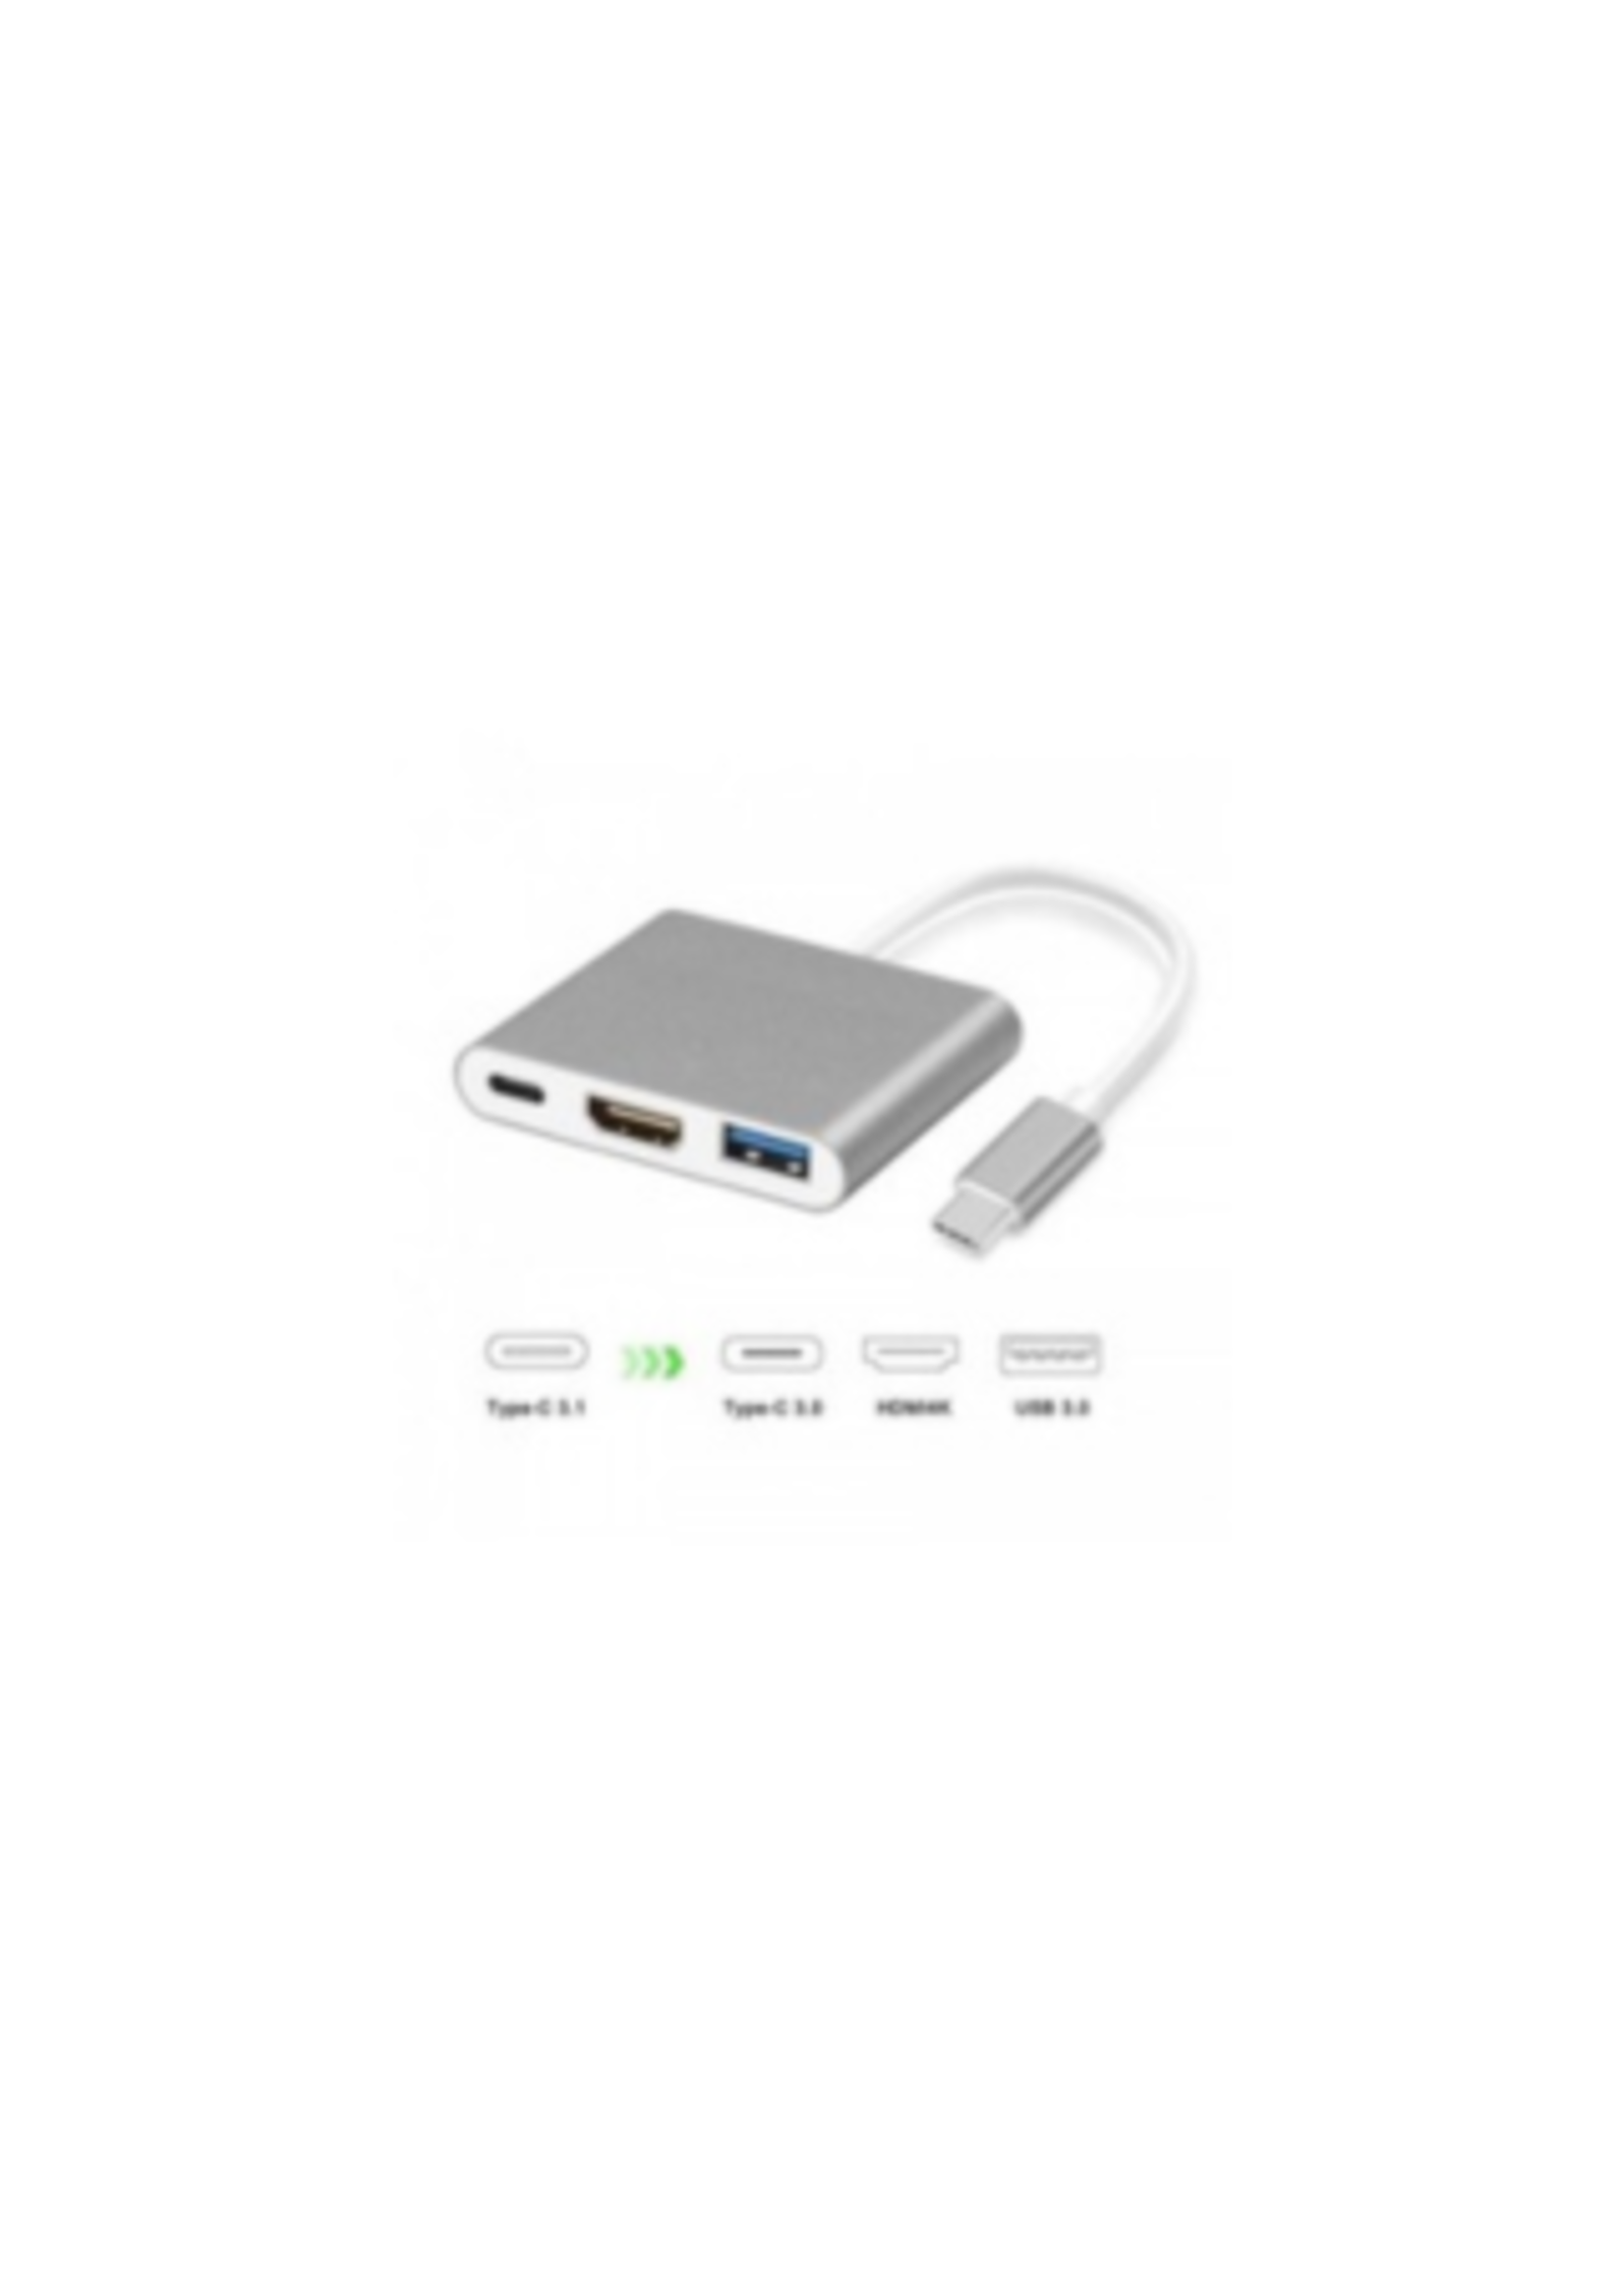 USB-C À HDMI+USB3.0+TypeC Female 3 EN 1 ADAPTER